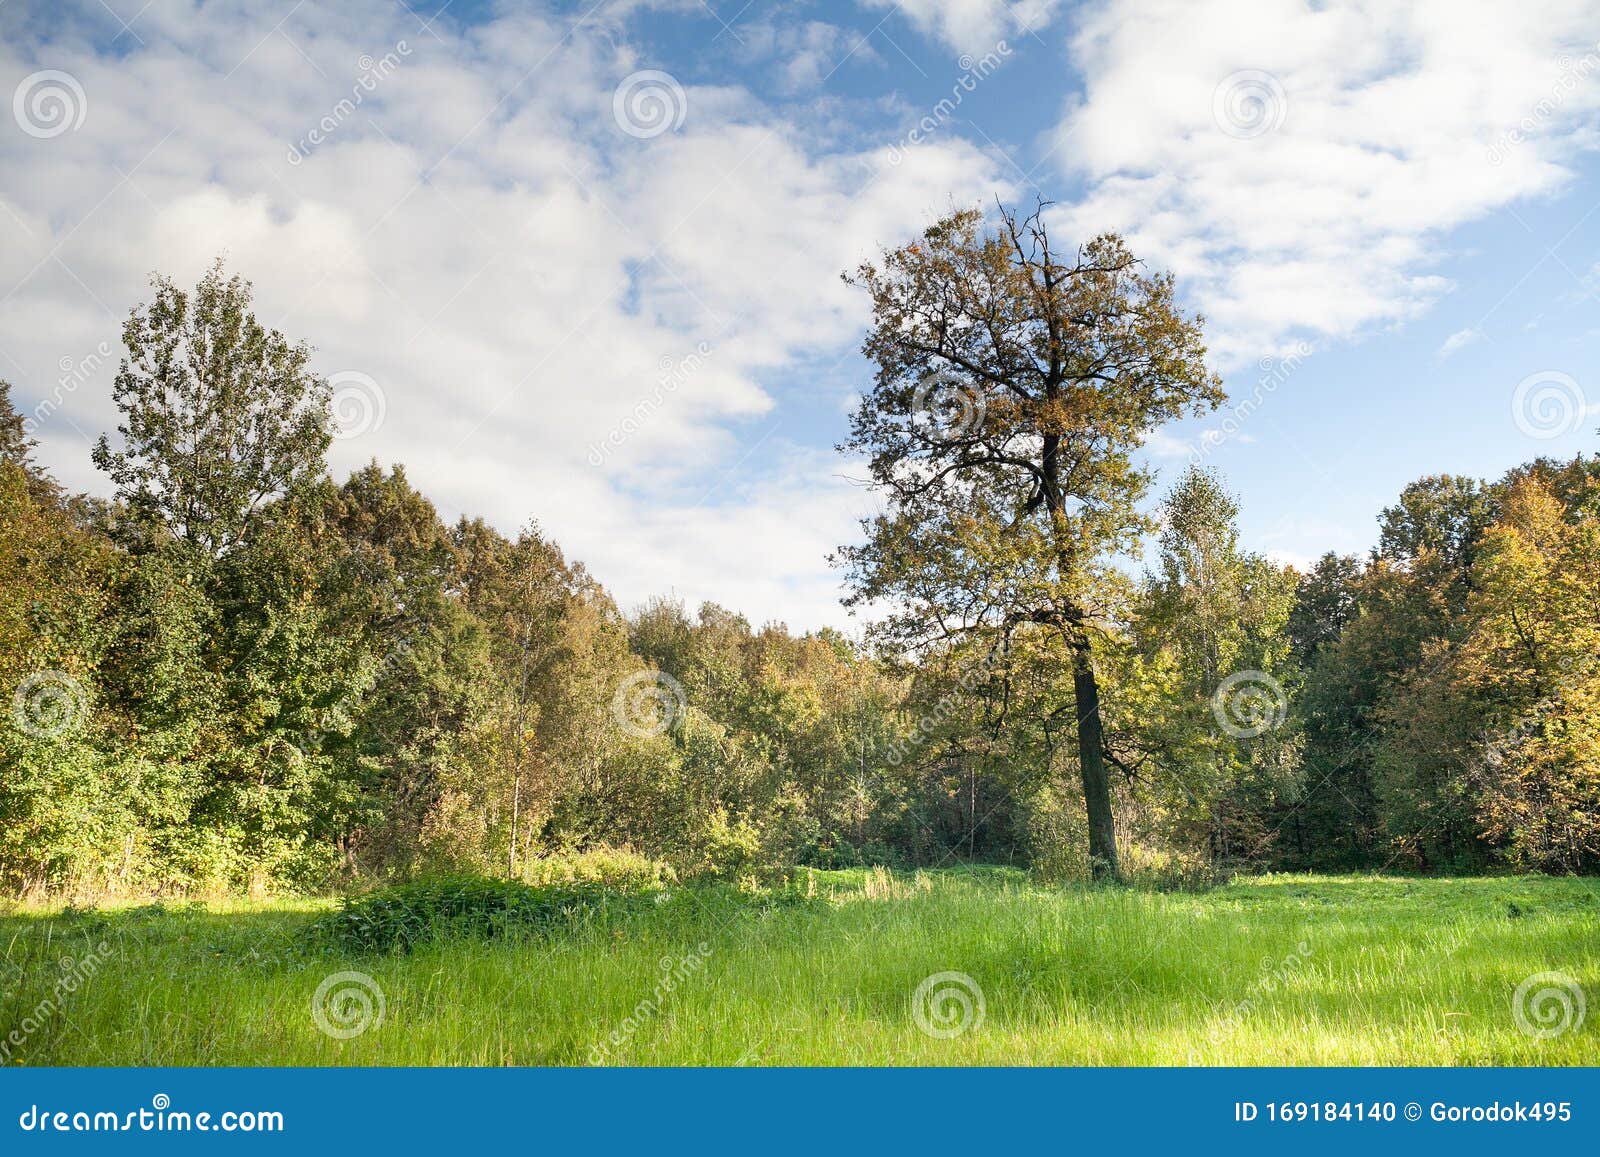 绿草绿林的夏日风景艳阳蓝天多云背景库存照片 图片包括有绿草绿林的夏日风景艳阳蓝天多云背景